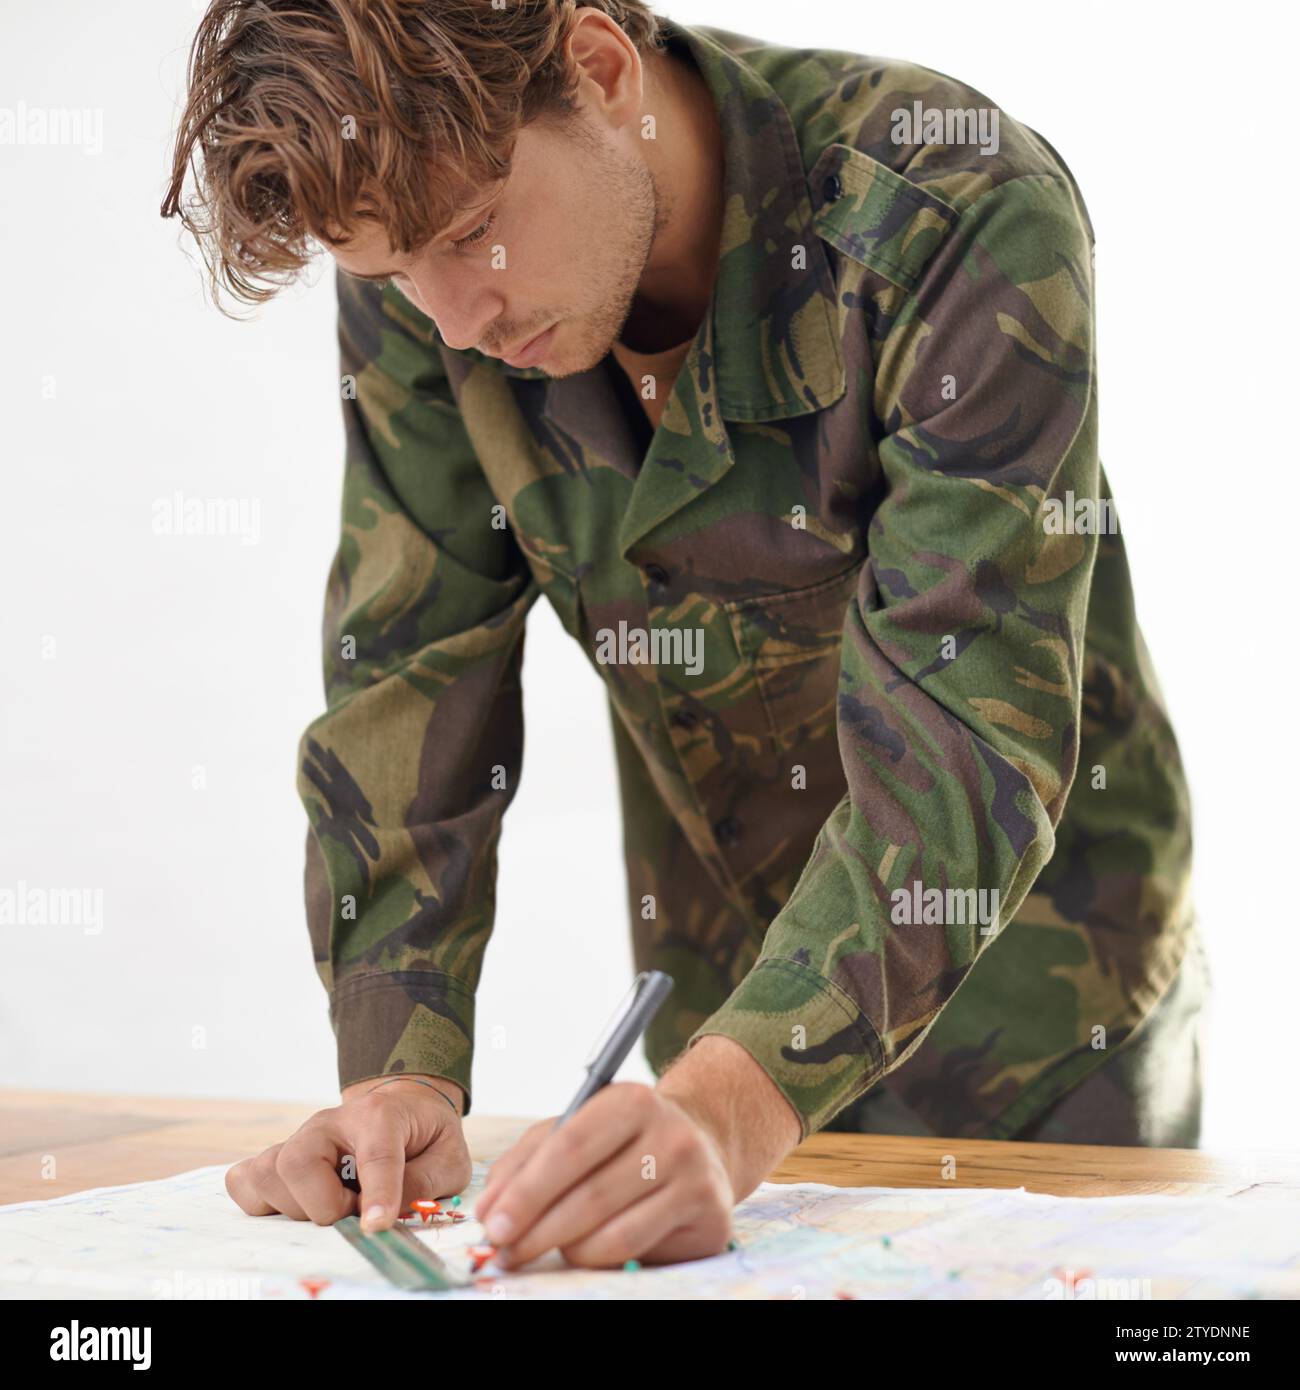 Soldato che scrive sulla mappa, piano d'attacco dell'esercito ed eroe in uniforme con obiettivi operativi per missioni in guerra. Militare su sfondo bianco, strategia Foto Stock